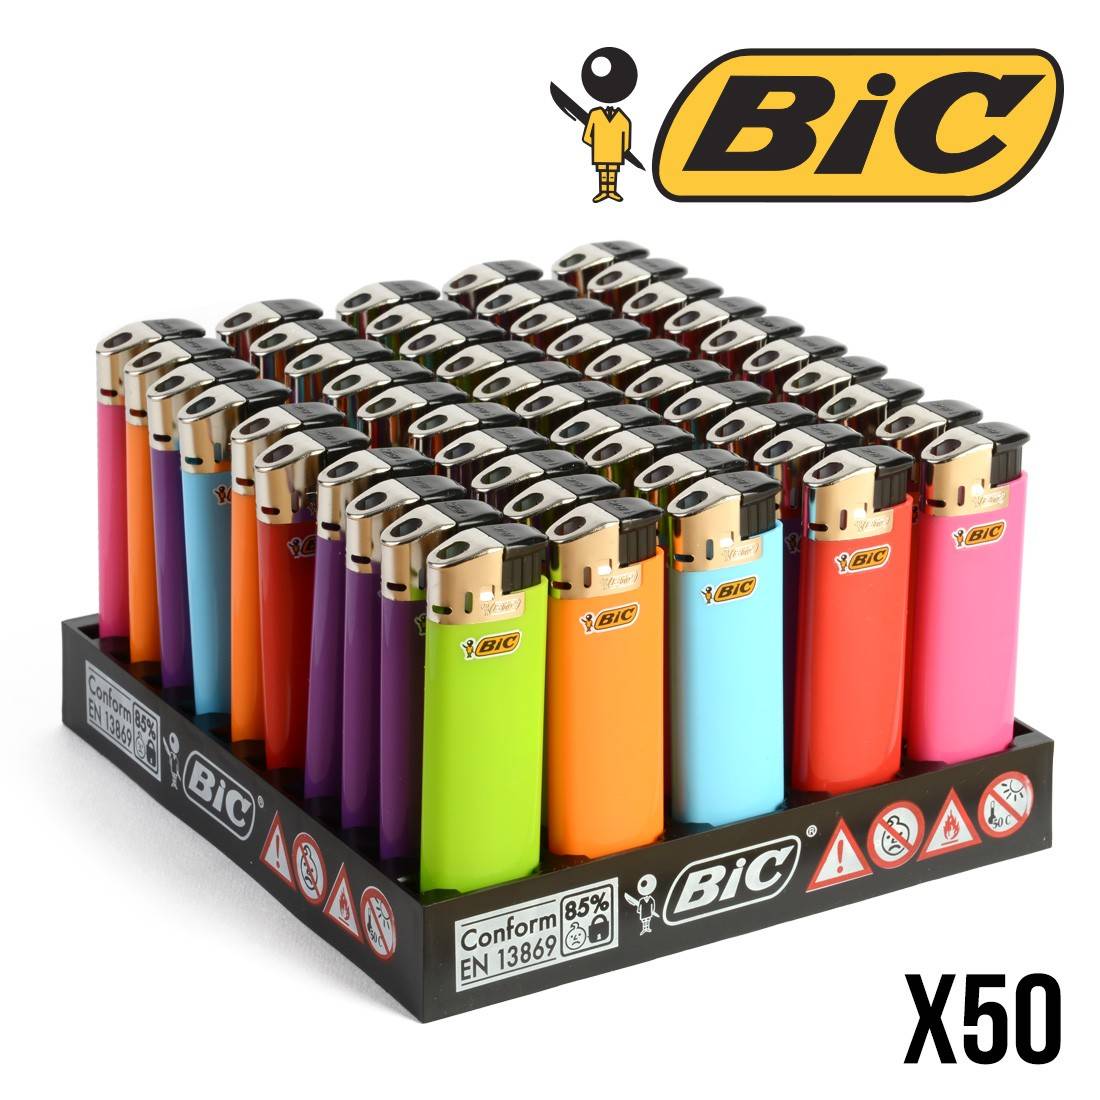 Briquet Bic Maxi Pas Cher x50 - Briquet BIC rechargeable - MajorSmoker